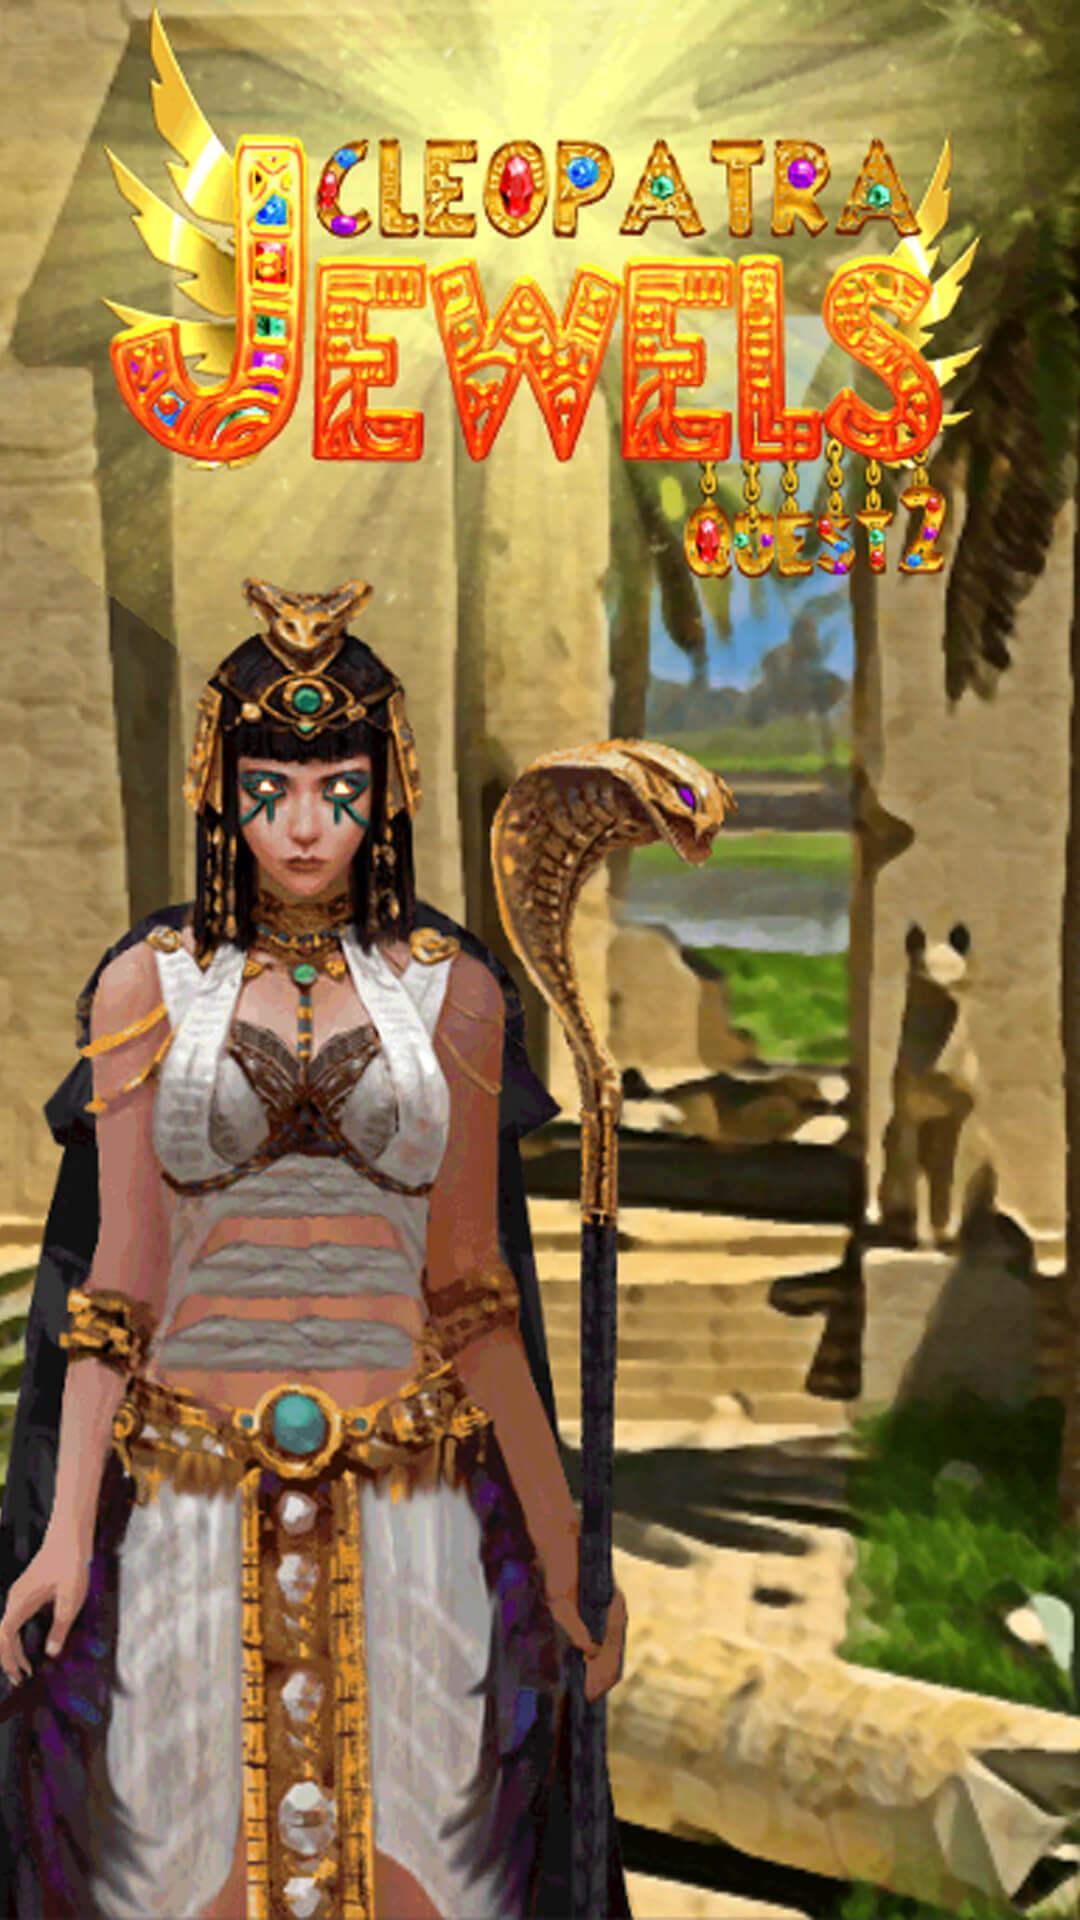 لعبة كسر لعنة جواهر الفرعون كليوباترا for Android - APK Download